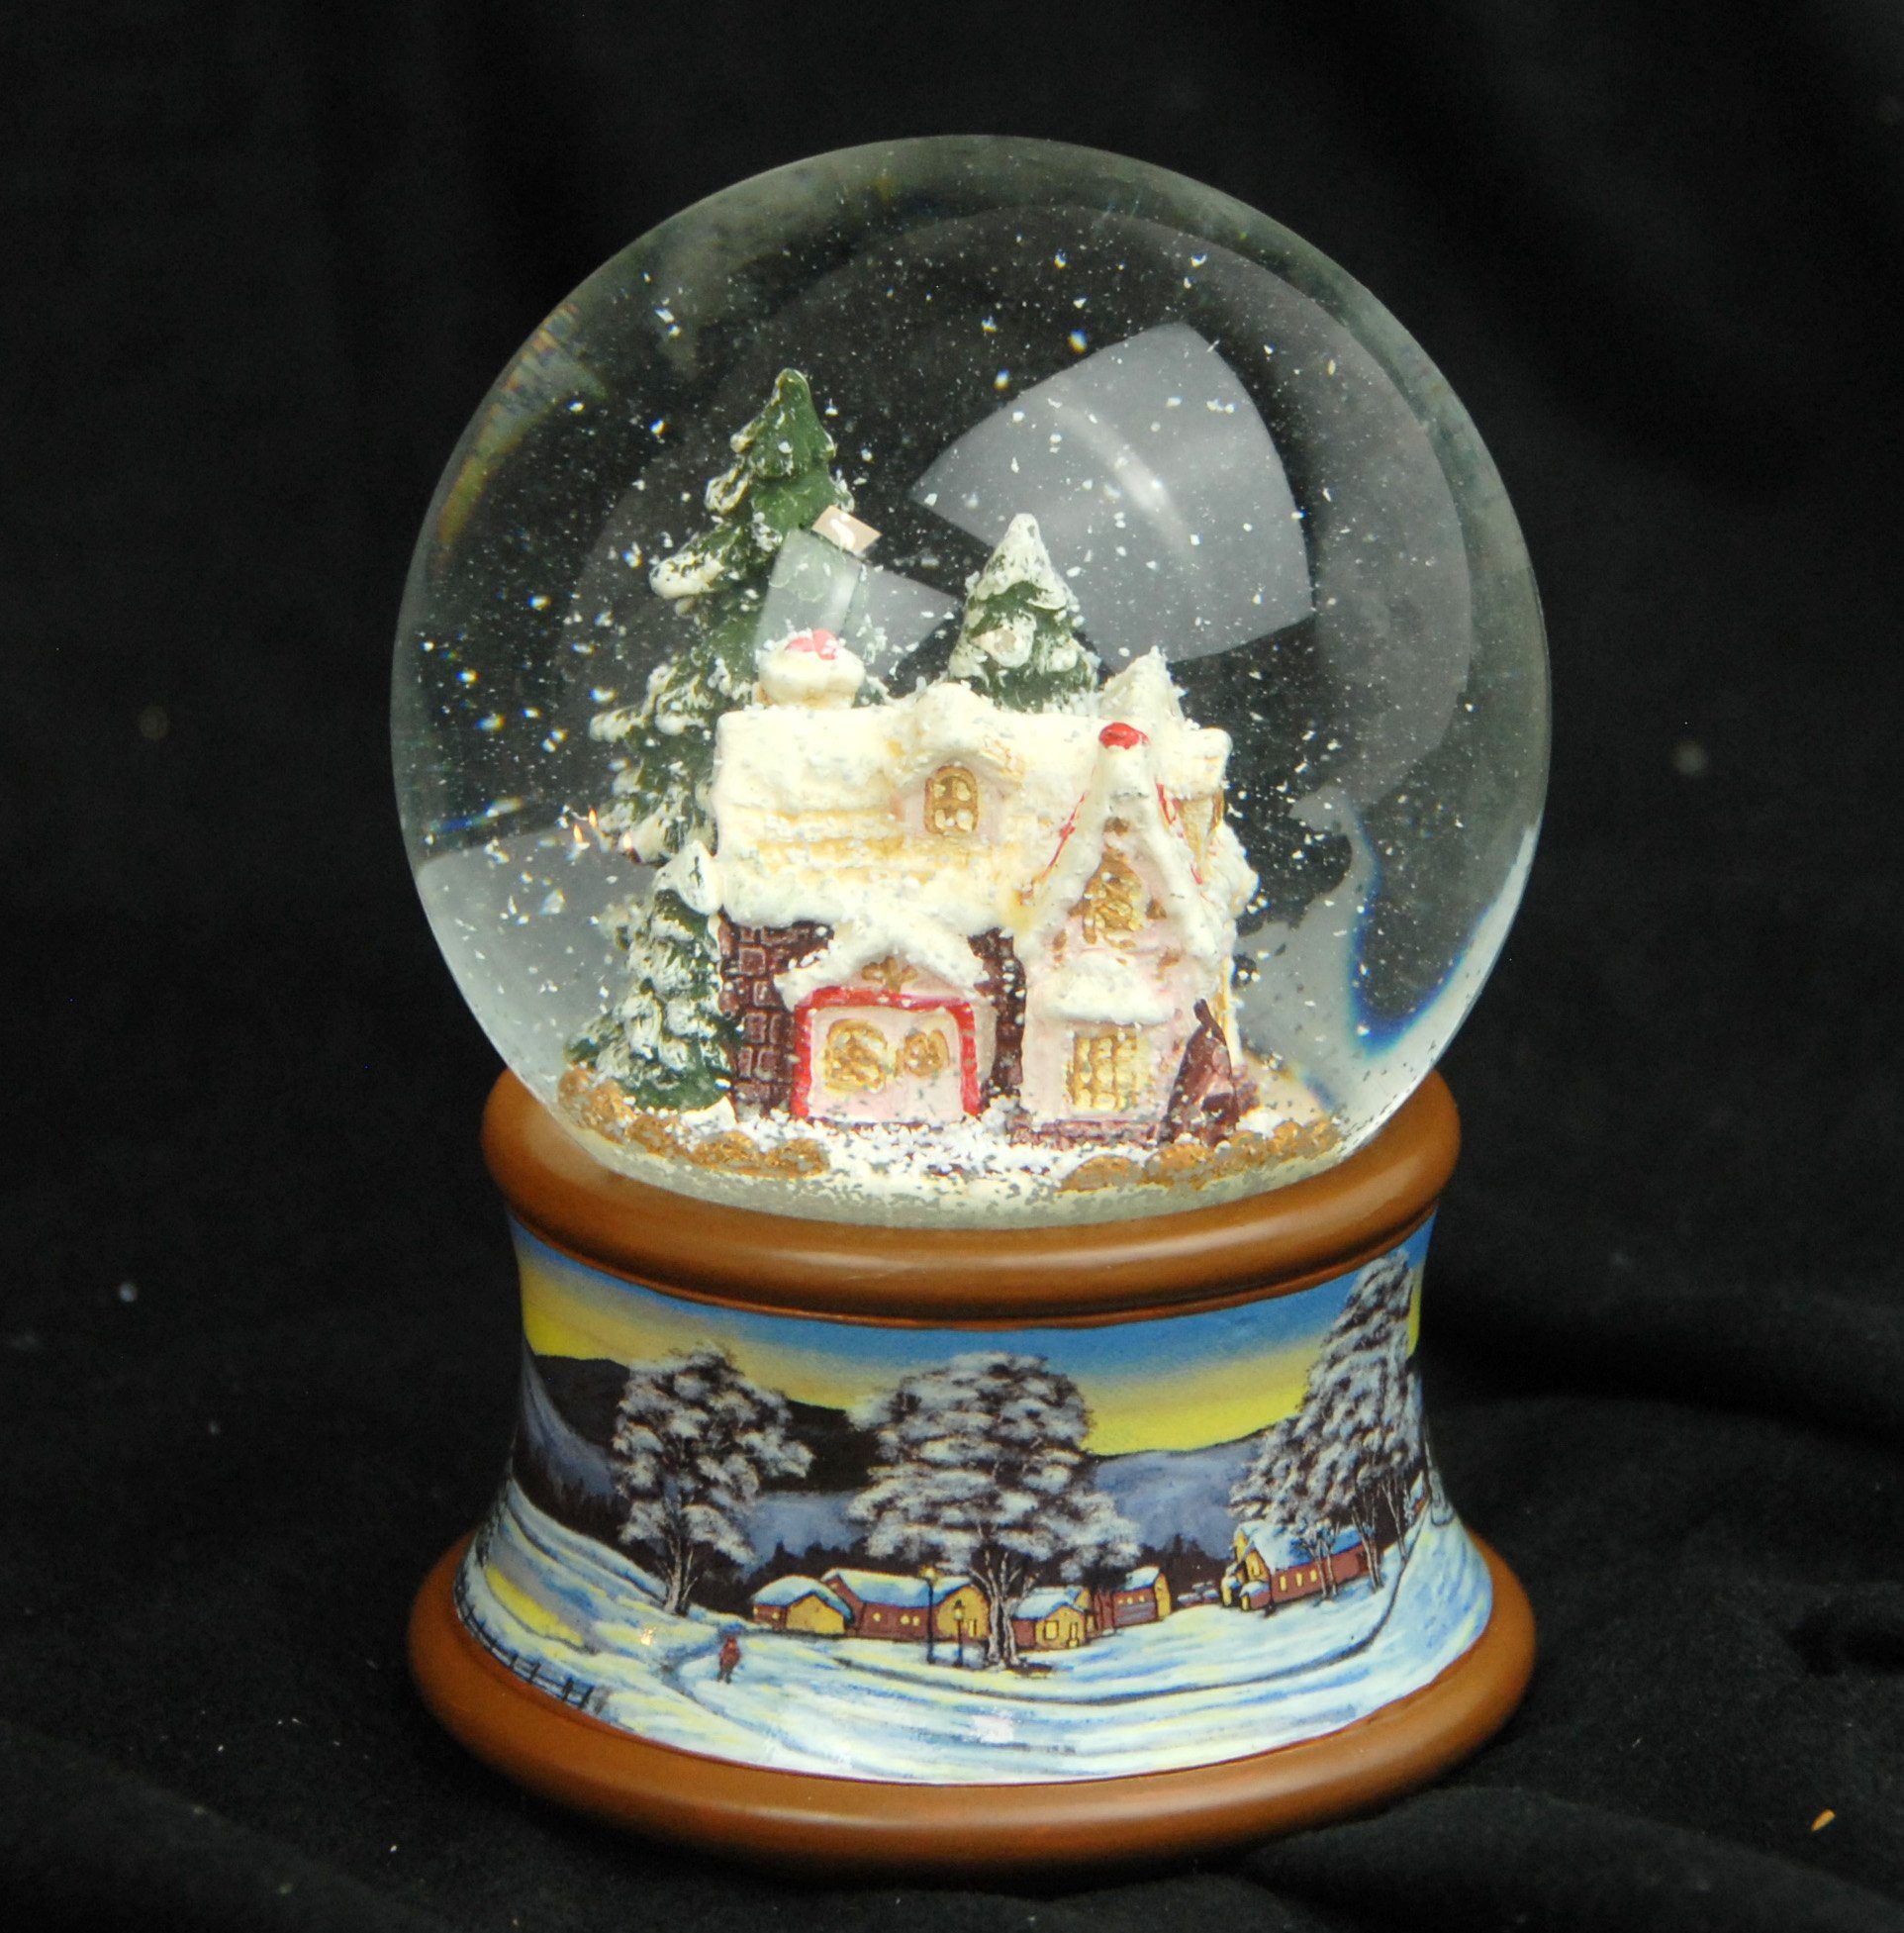 MINIUM-Collection auf cm mit Winterlandschaft 10 Zuckerbäckerhaus Spieluhr braun Sockel Schneekugel